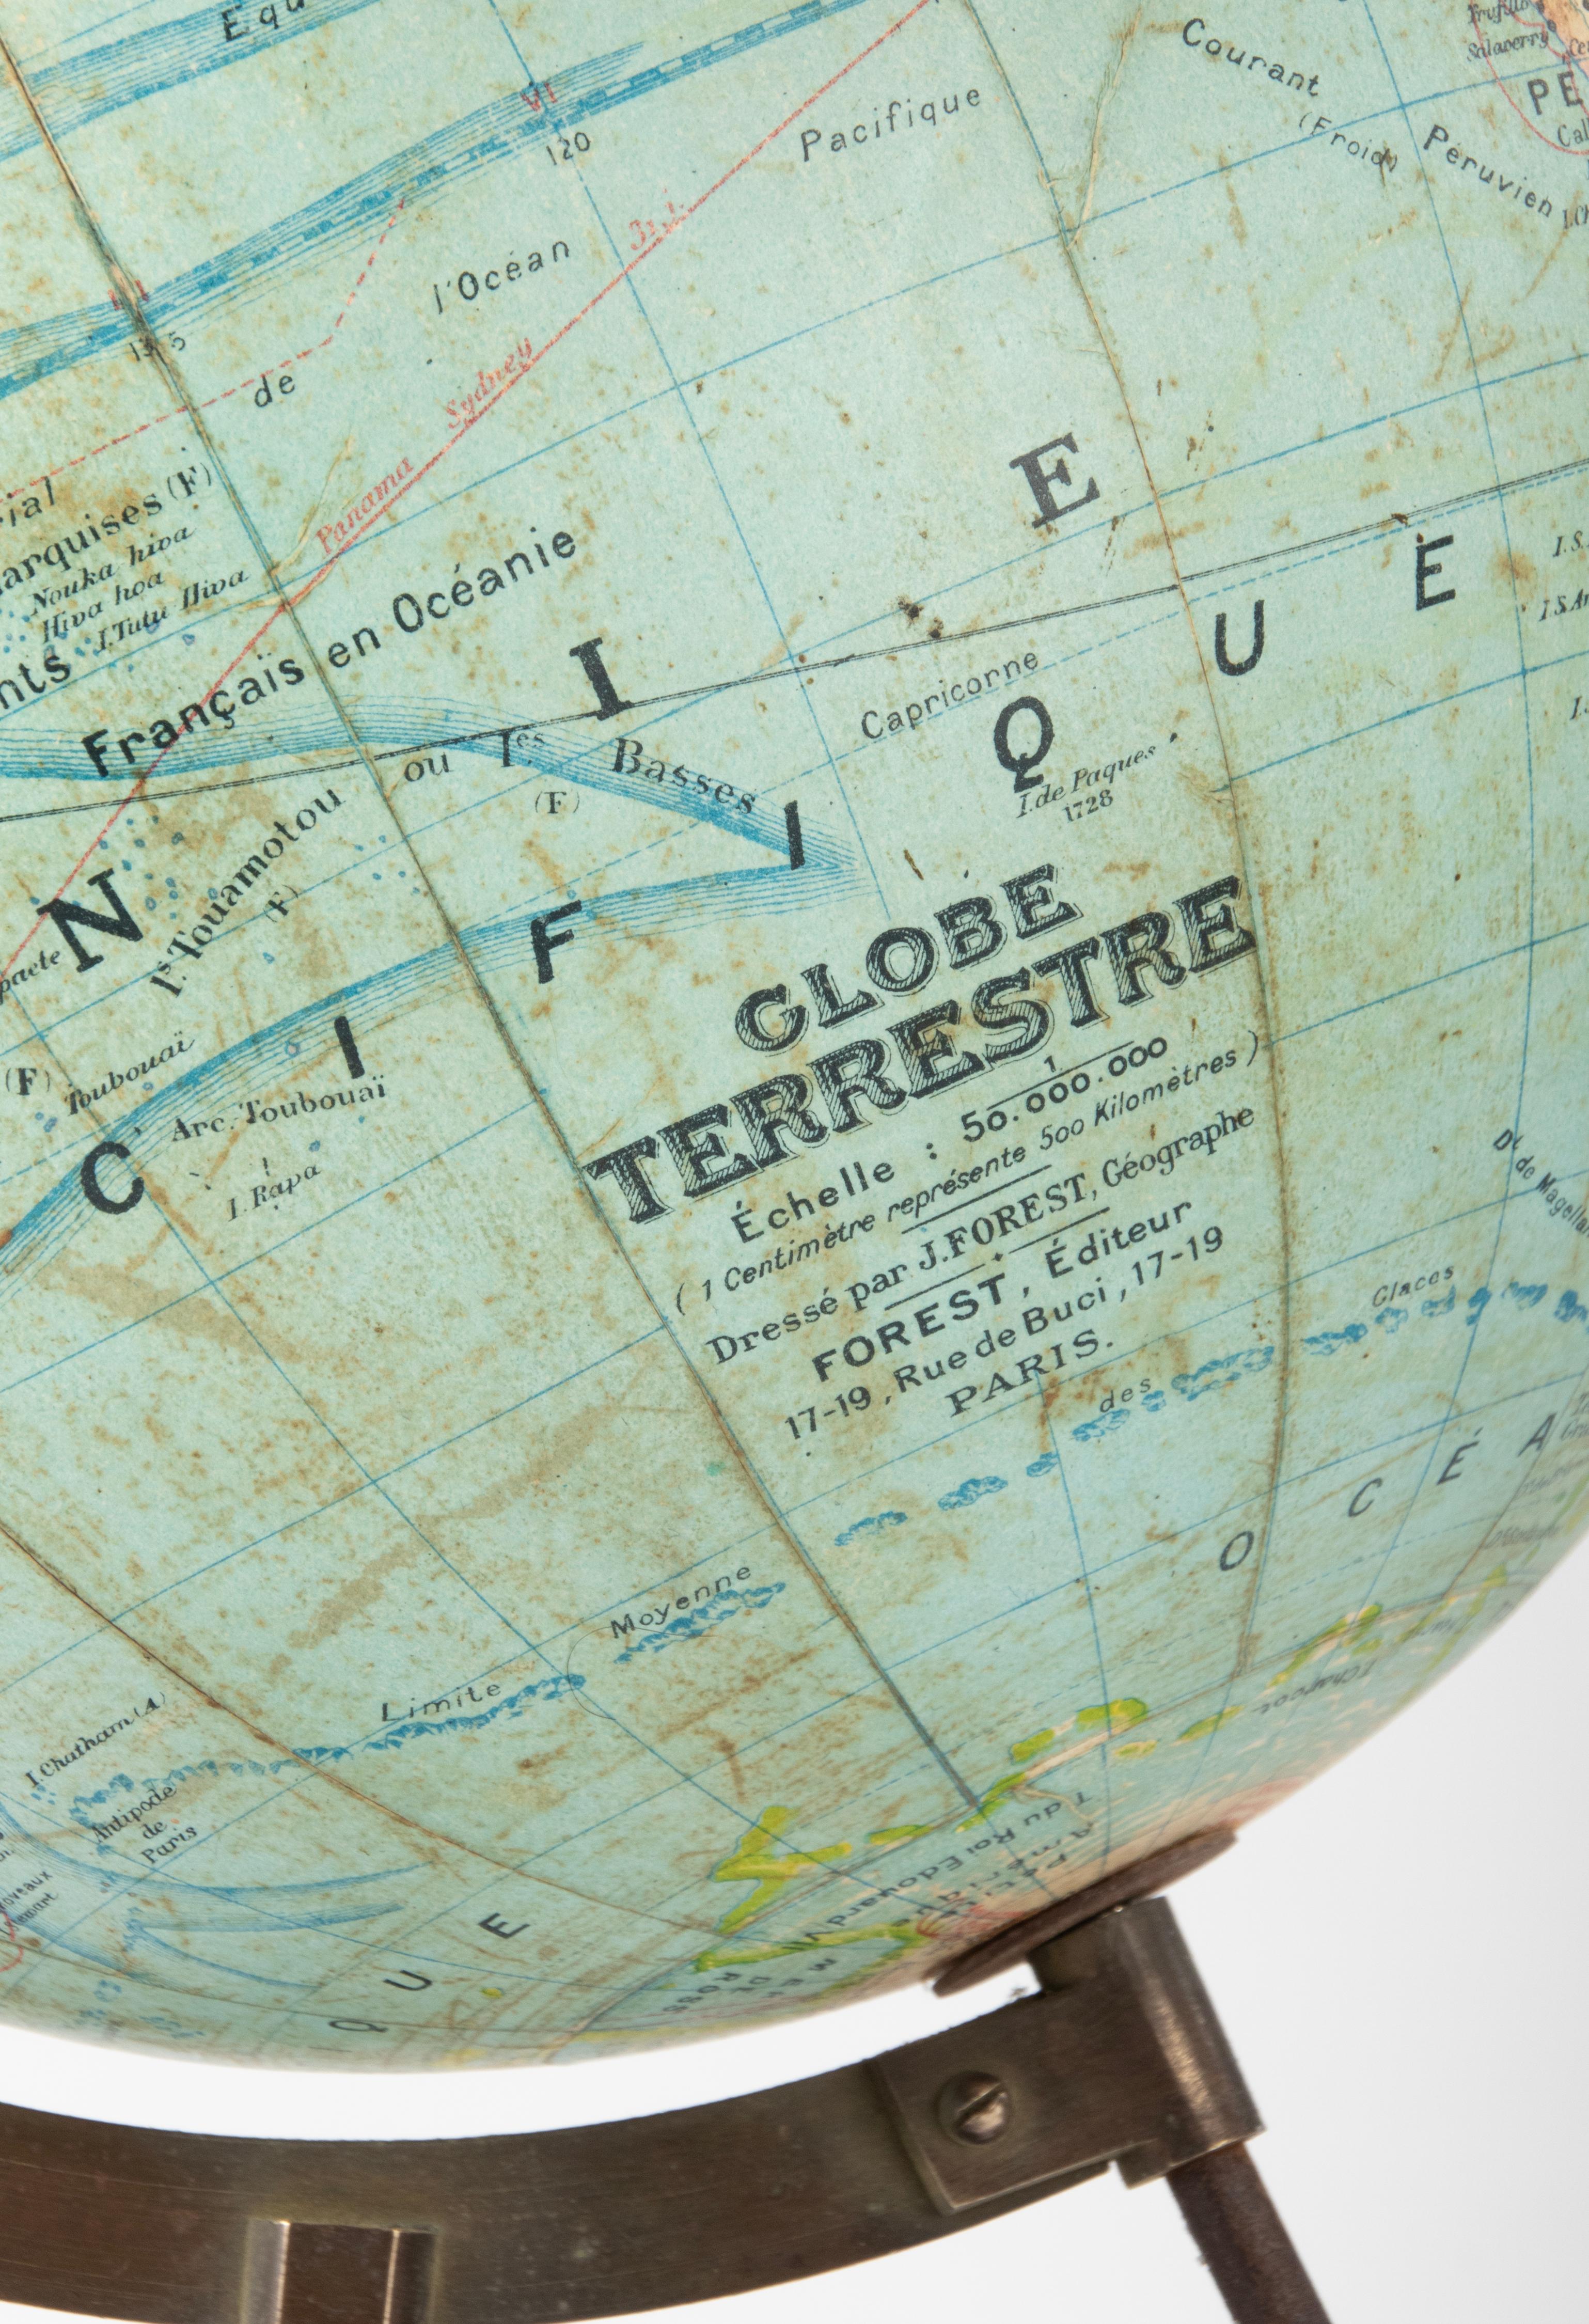 World Globe des späten 19. Jahrhunderts – herausgegeben von J. Forest Paris – Globe Terrestre 3